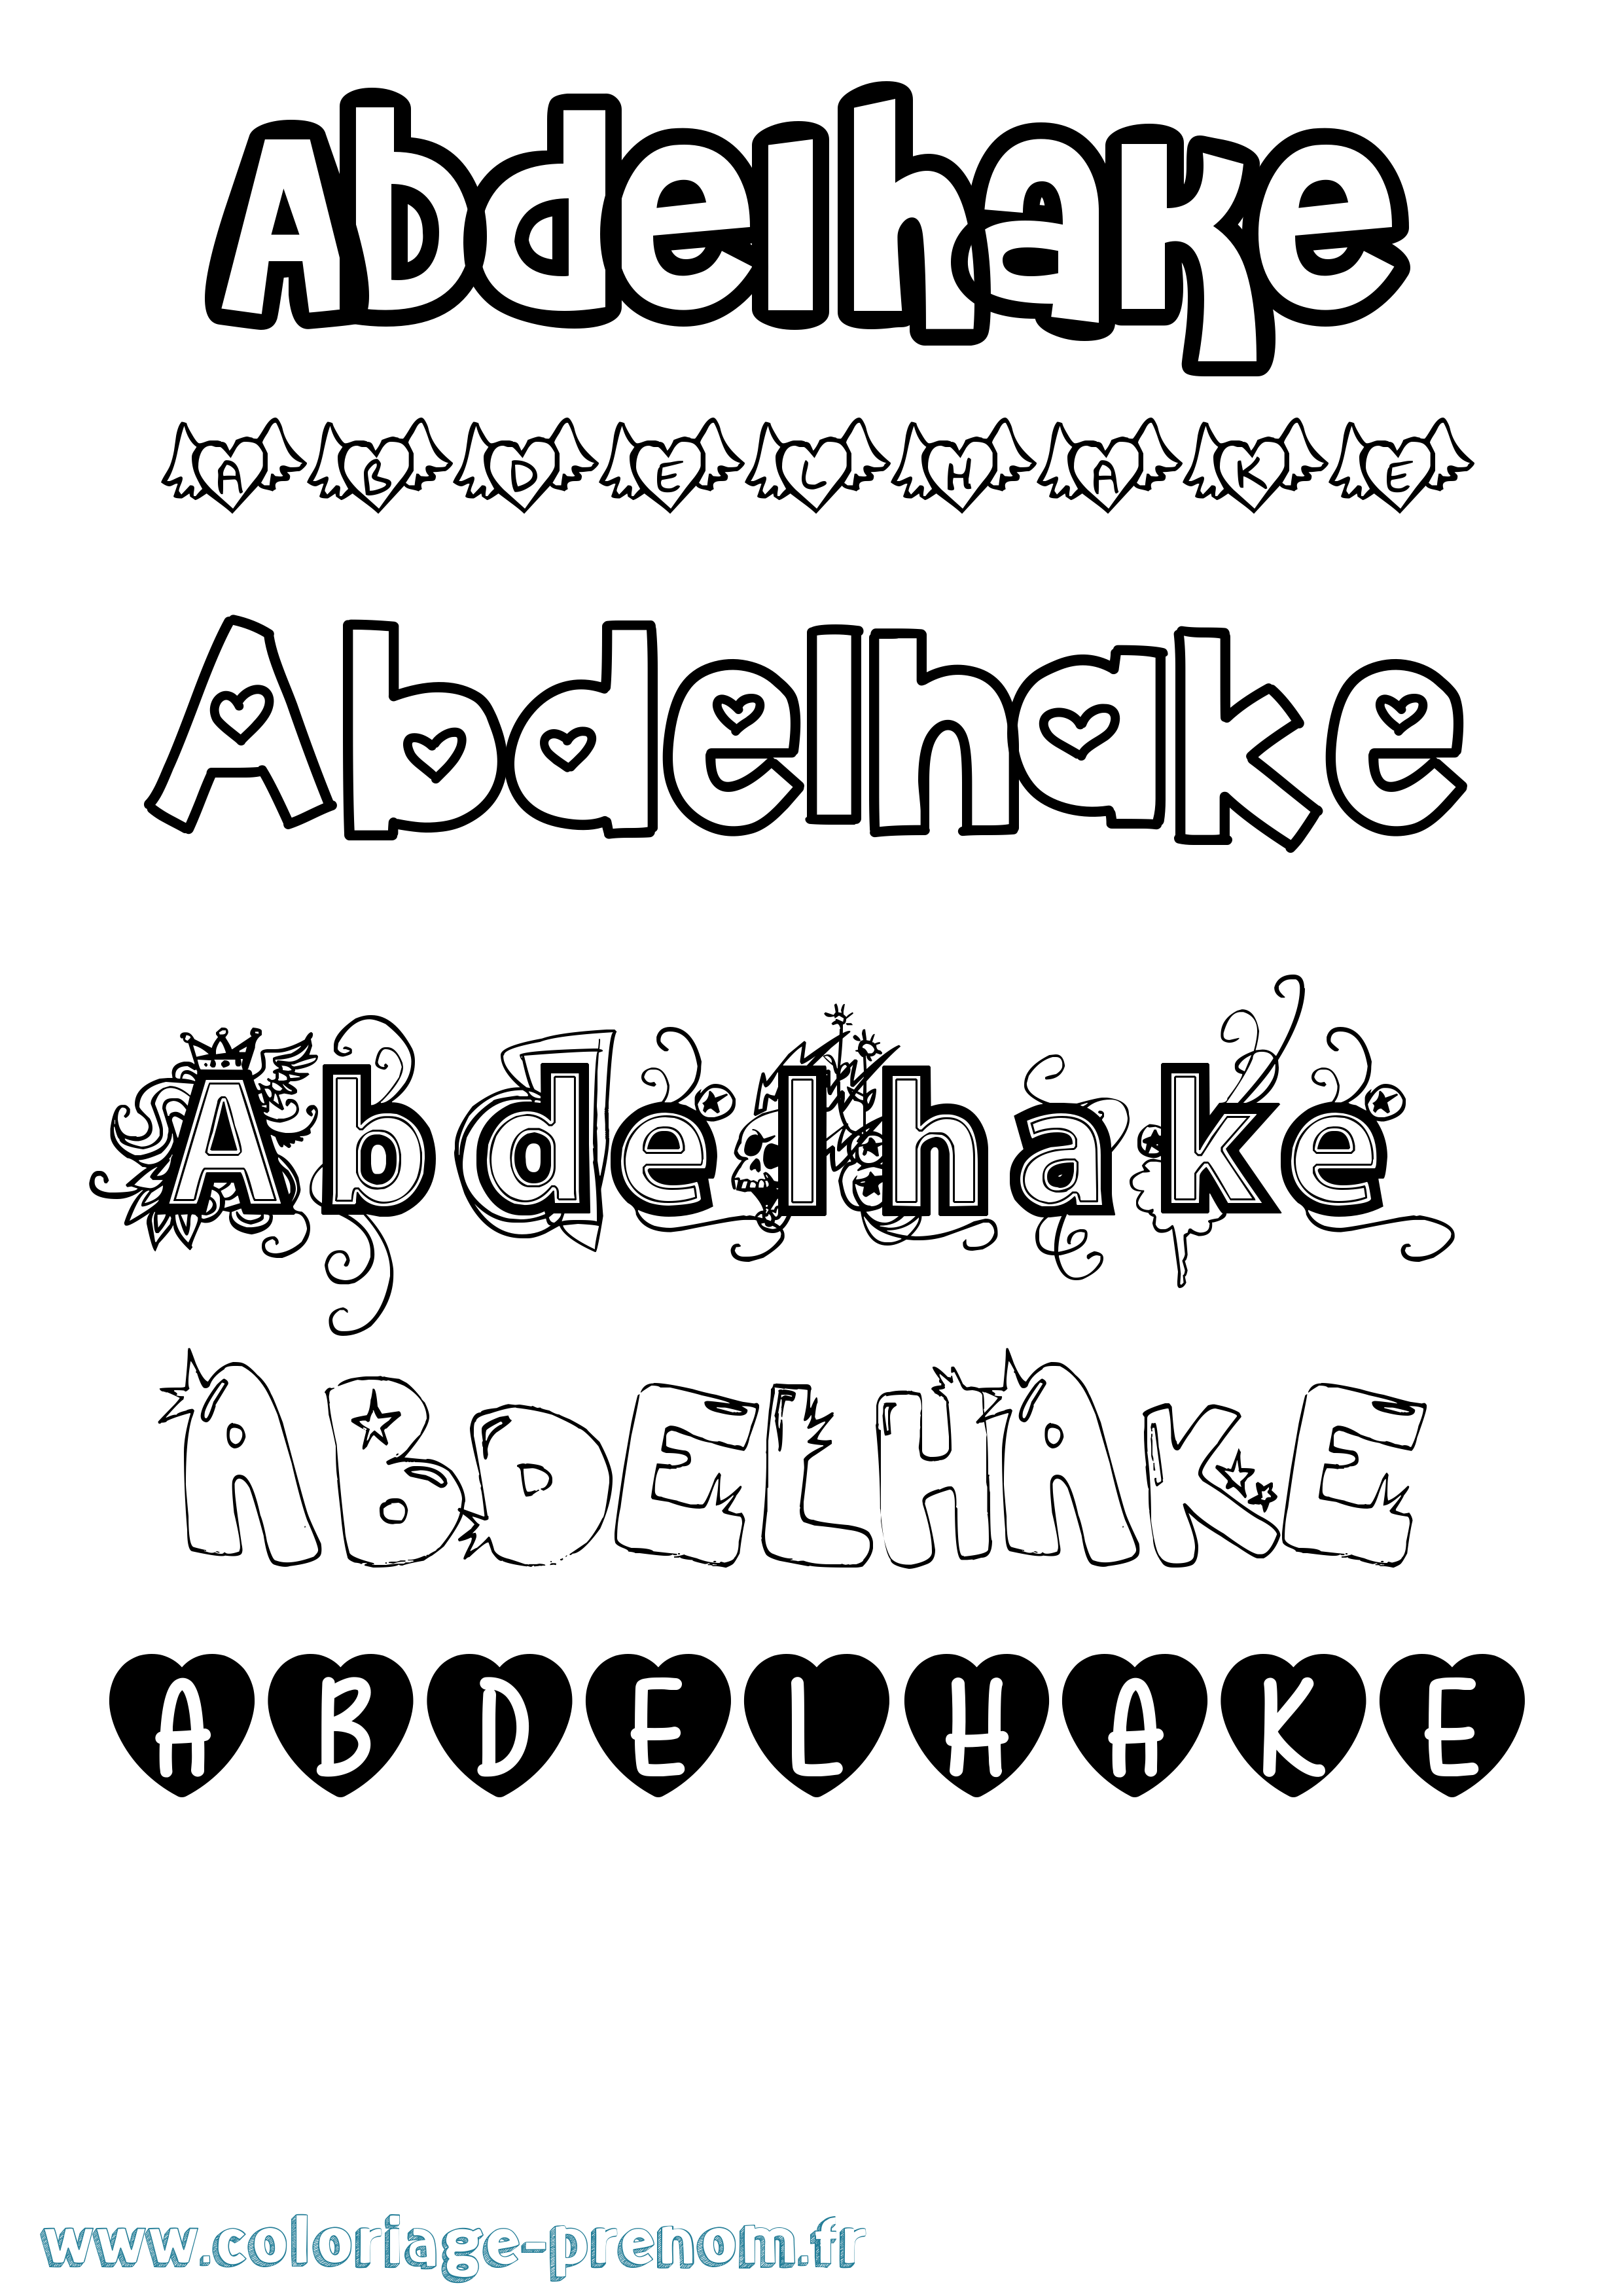 Coloriage prénom Abdelhake Girly